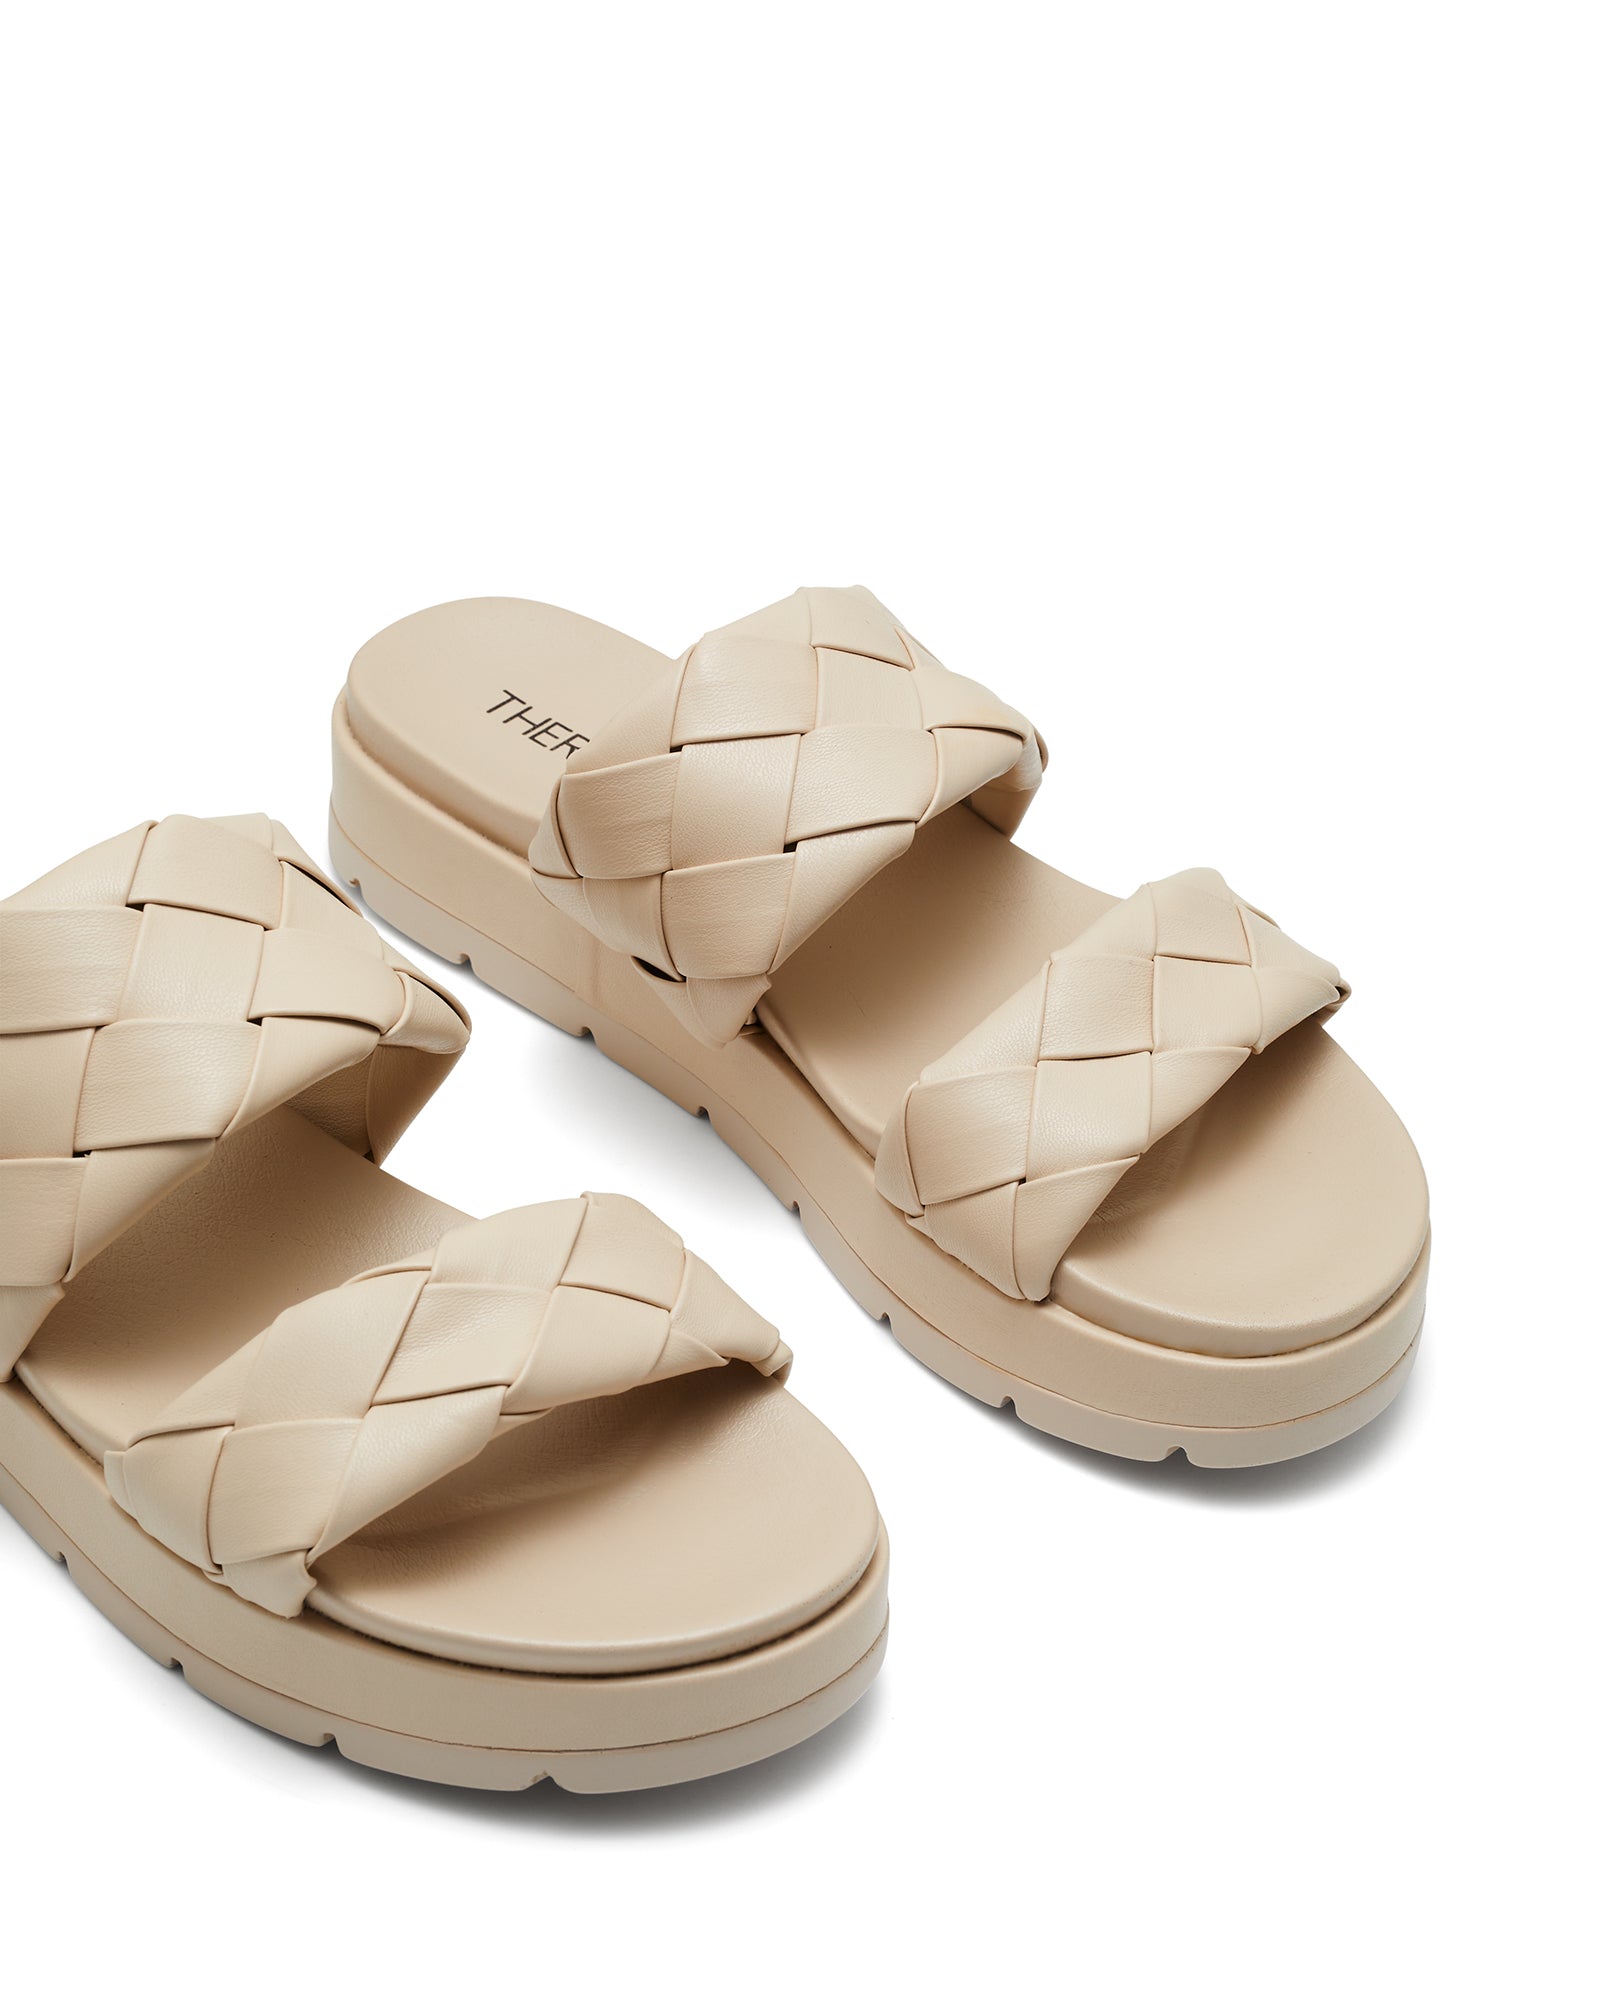 Therapy Shoes Sharpi Bone | Women's Sandals | Slides | Platform | Flatform